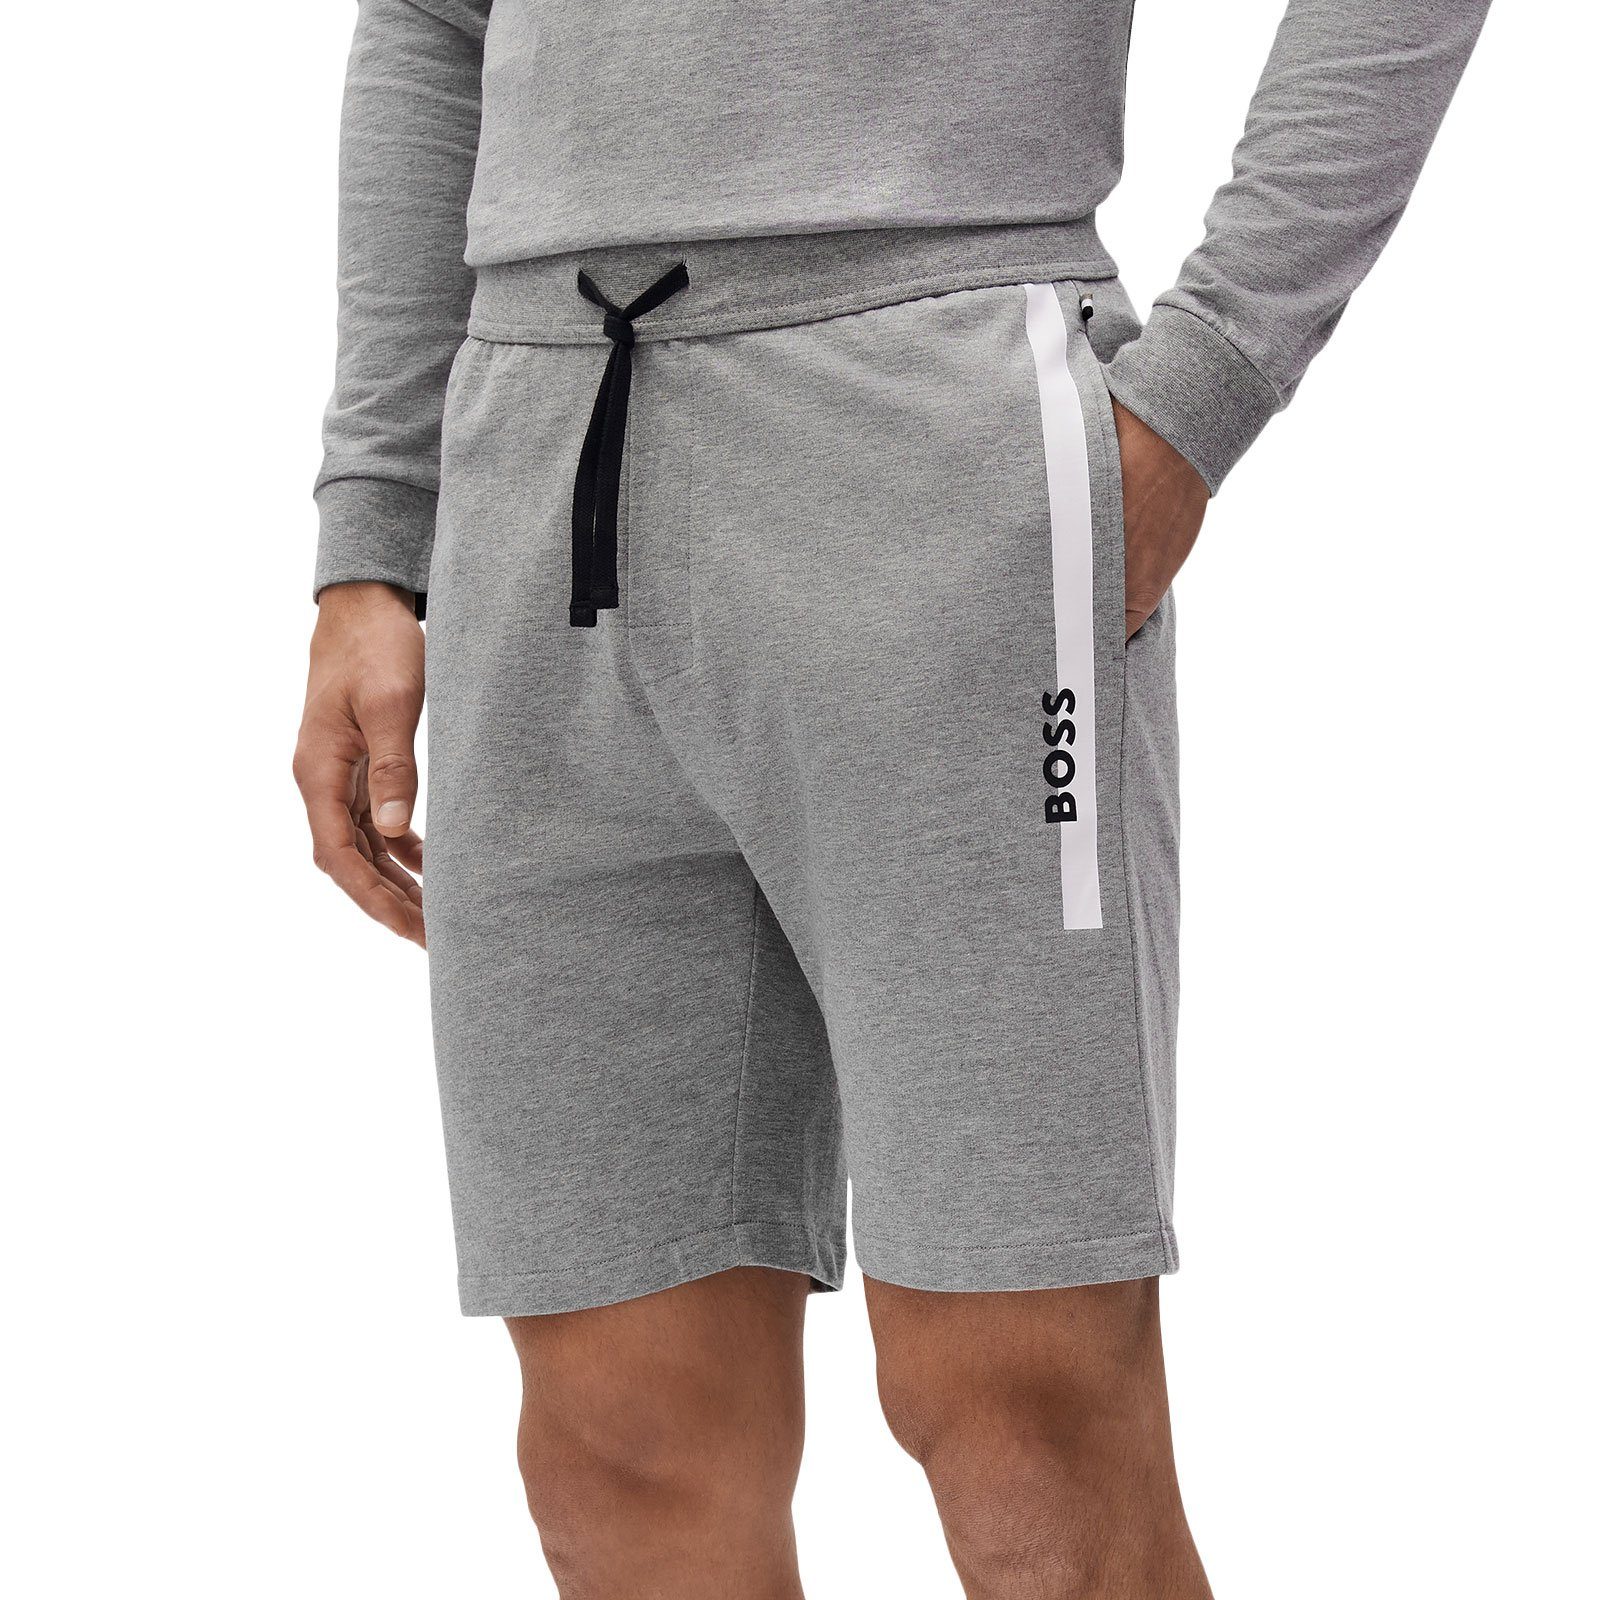 BOSS Shorts grey kontrastfarbenen Streifen medium 033 Shorts Authentic mit